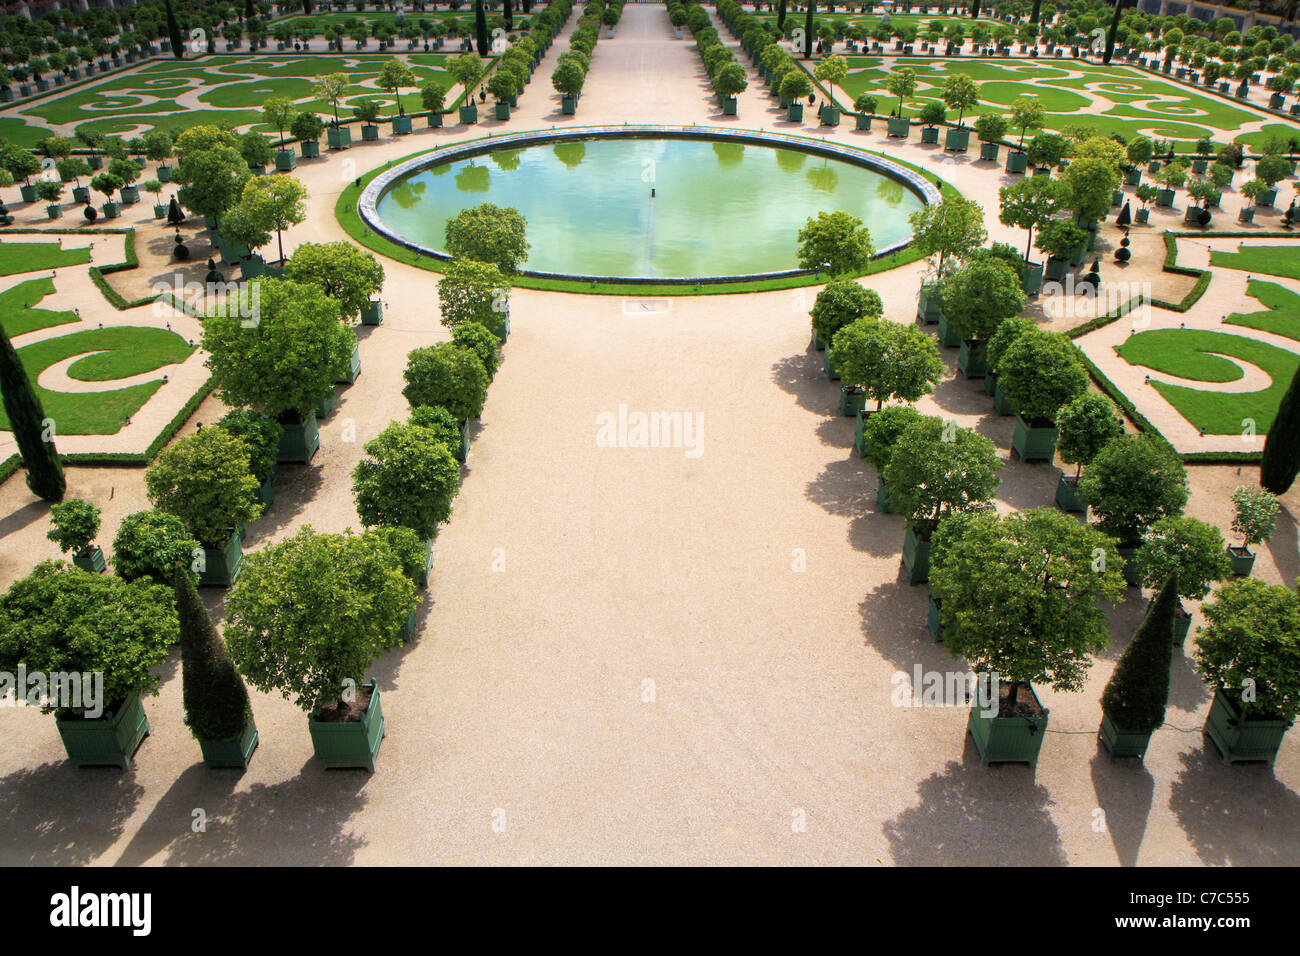 Gardens Of Versailles L Orangerie Chateau De Versailles France Stock Photo Alamy